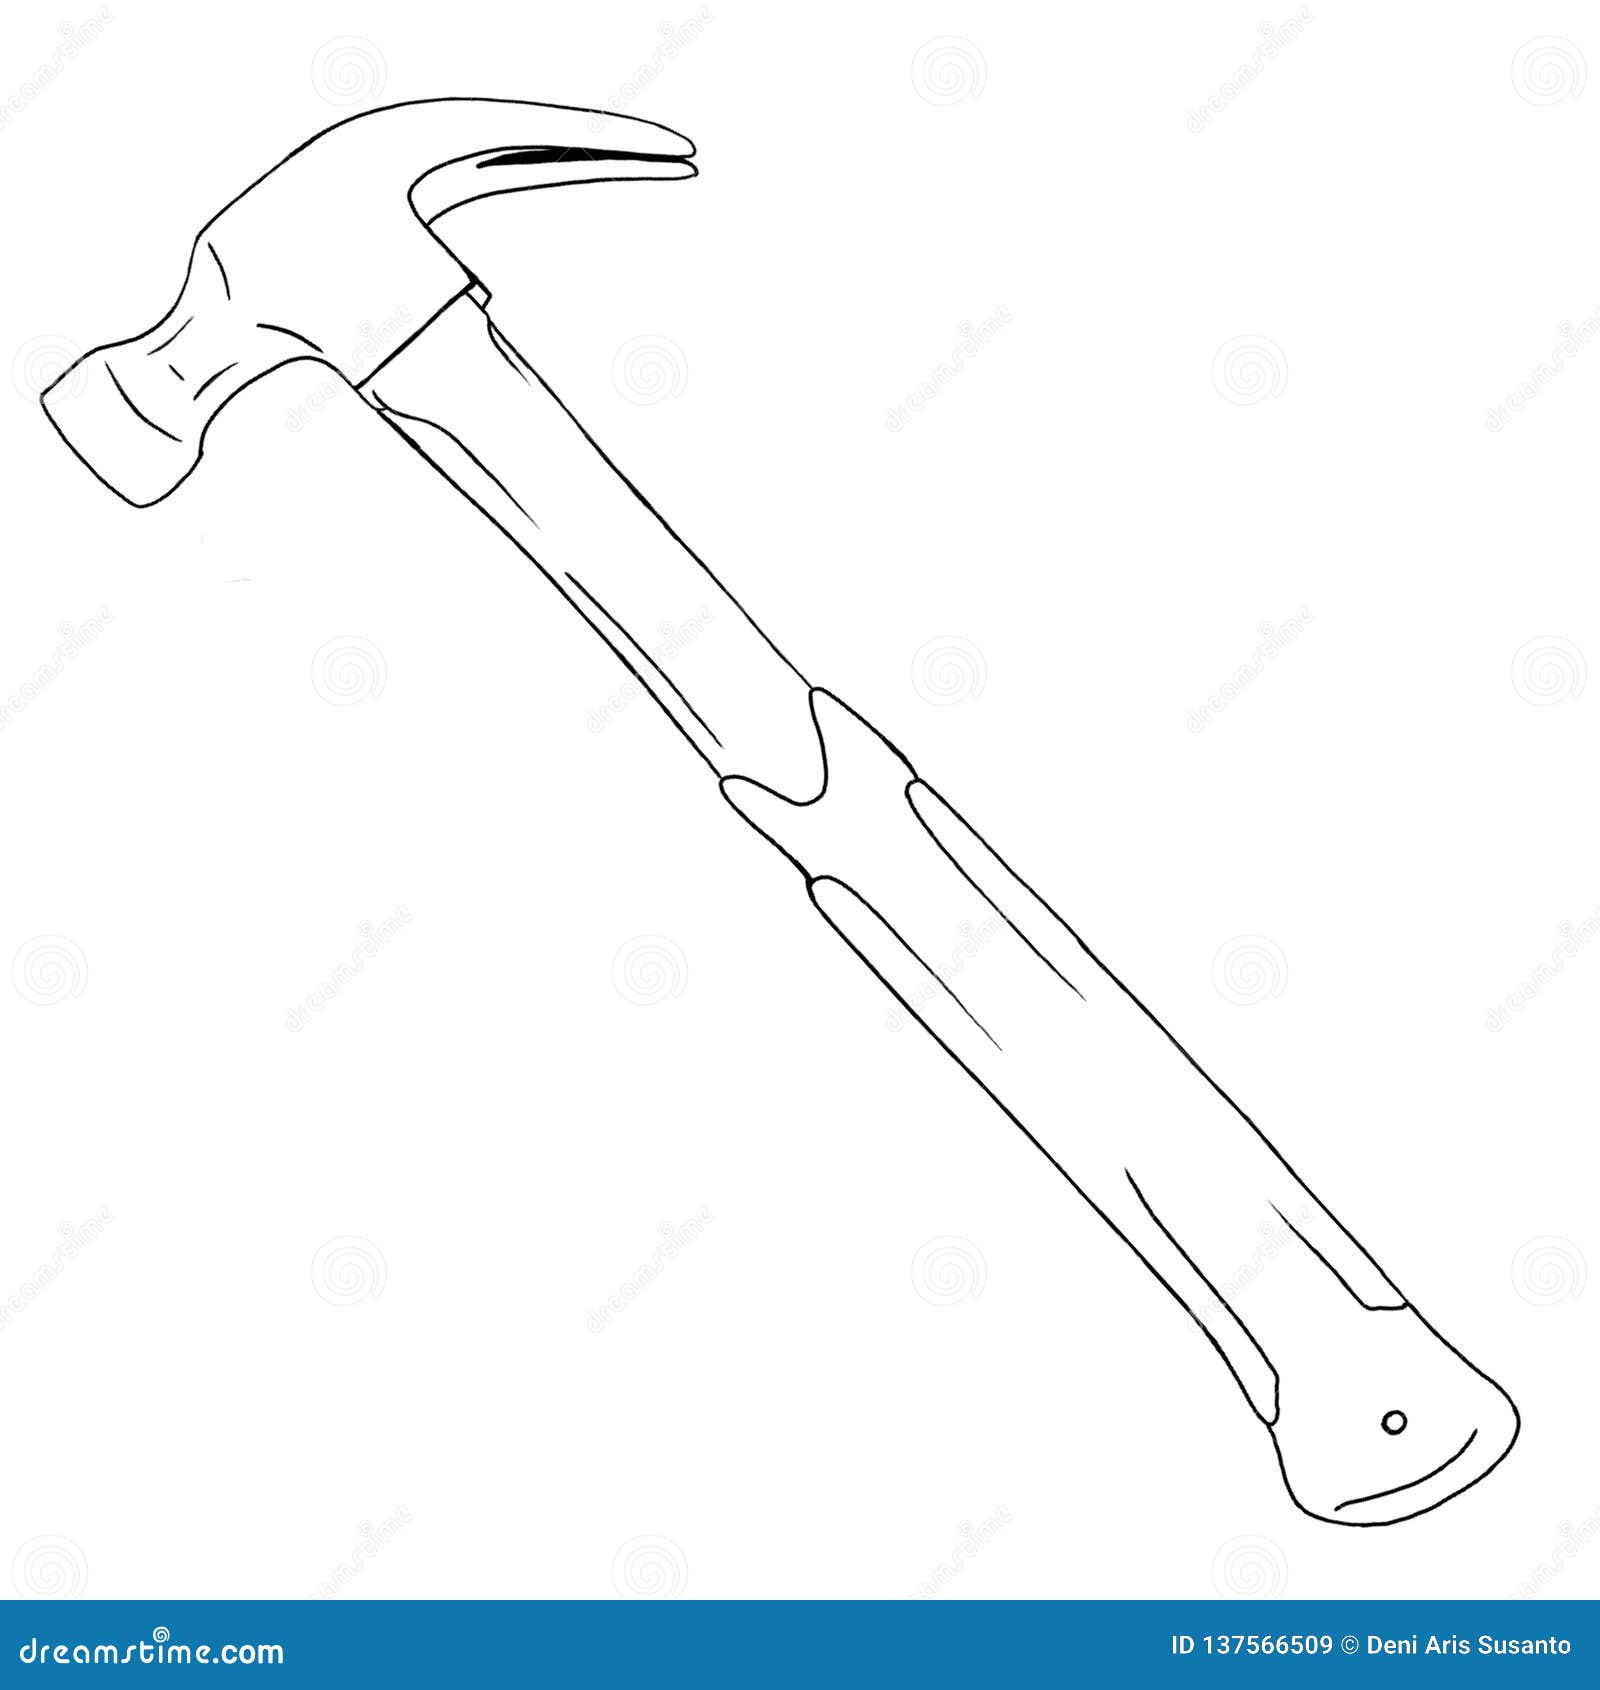 Hammer - Drawing Skill